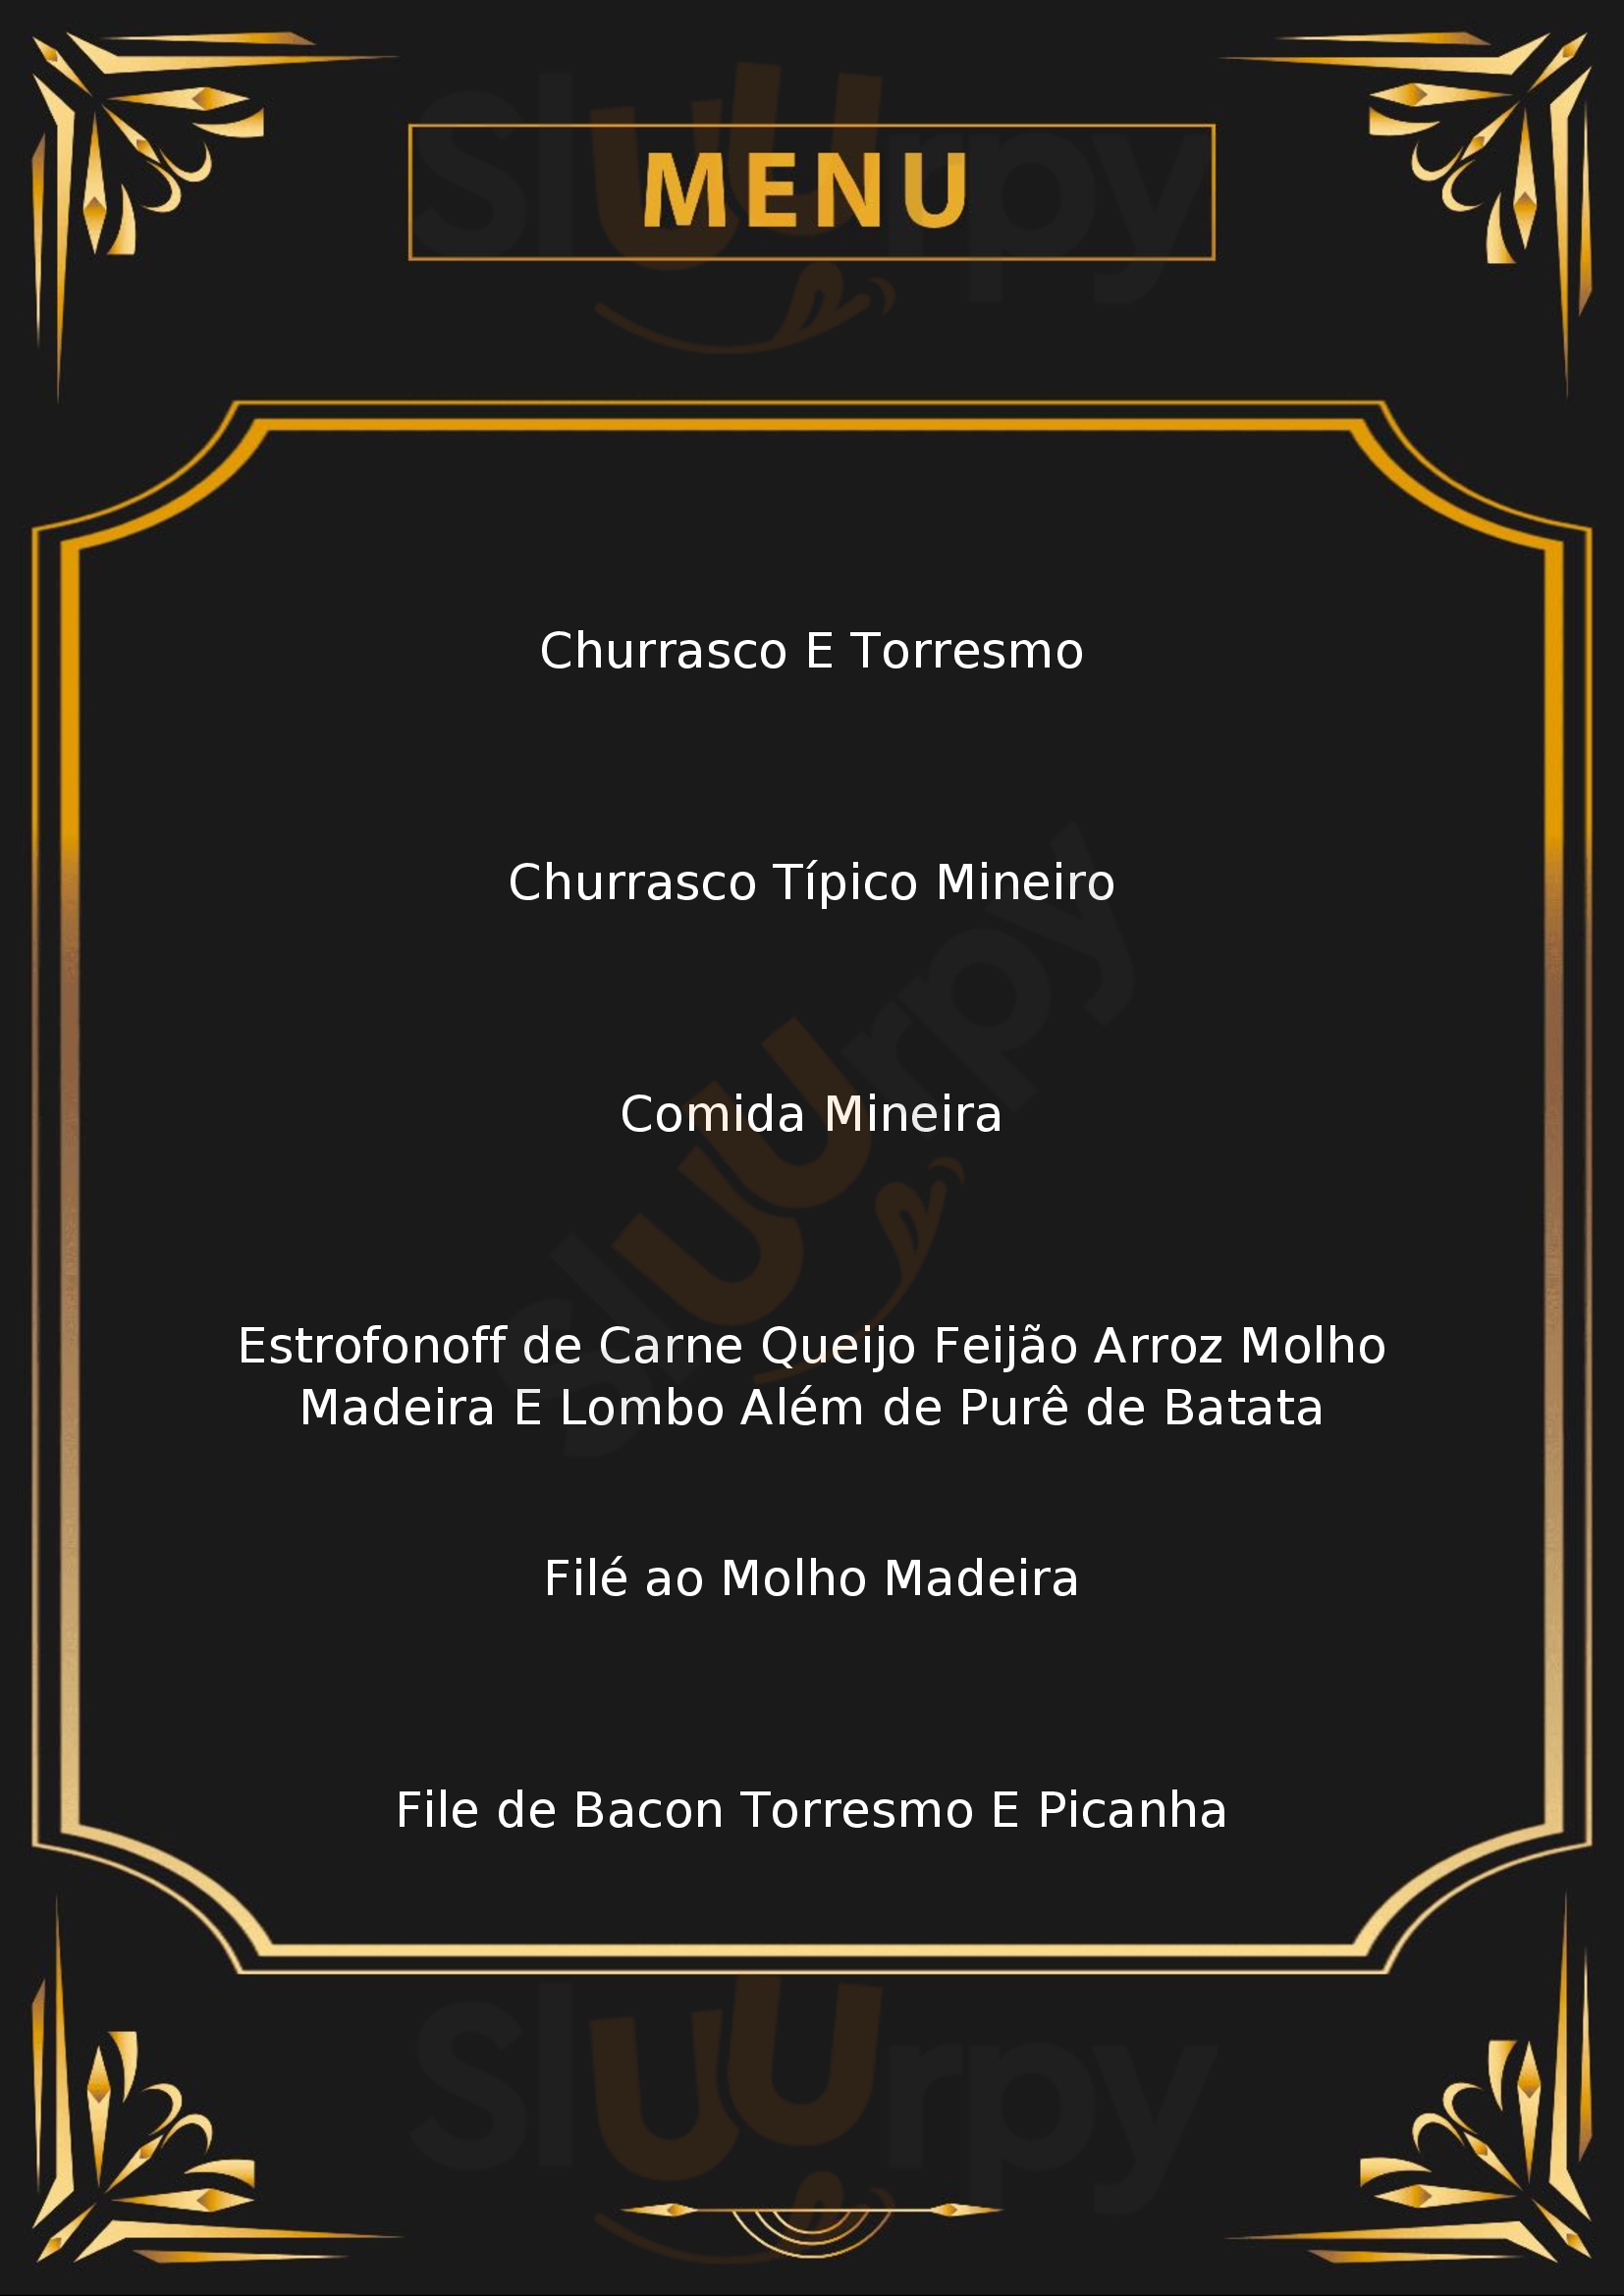 Restaurante Chalé Mineiro Belo Horizonte Menu - 1